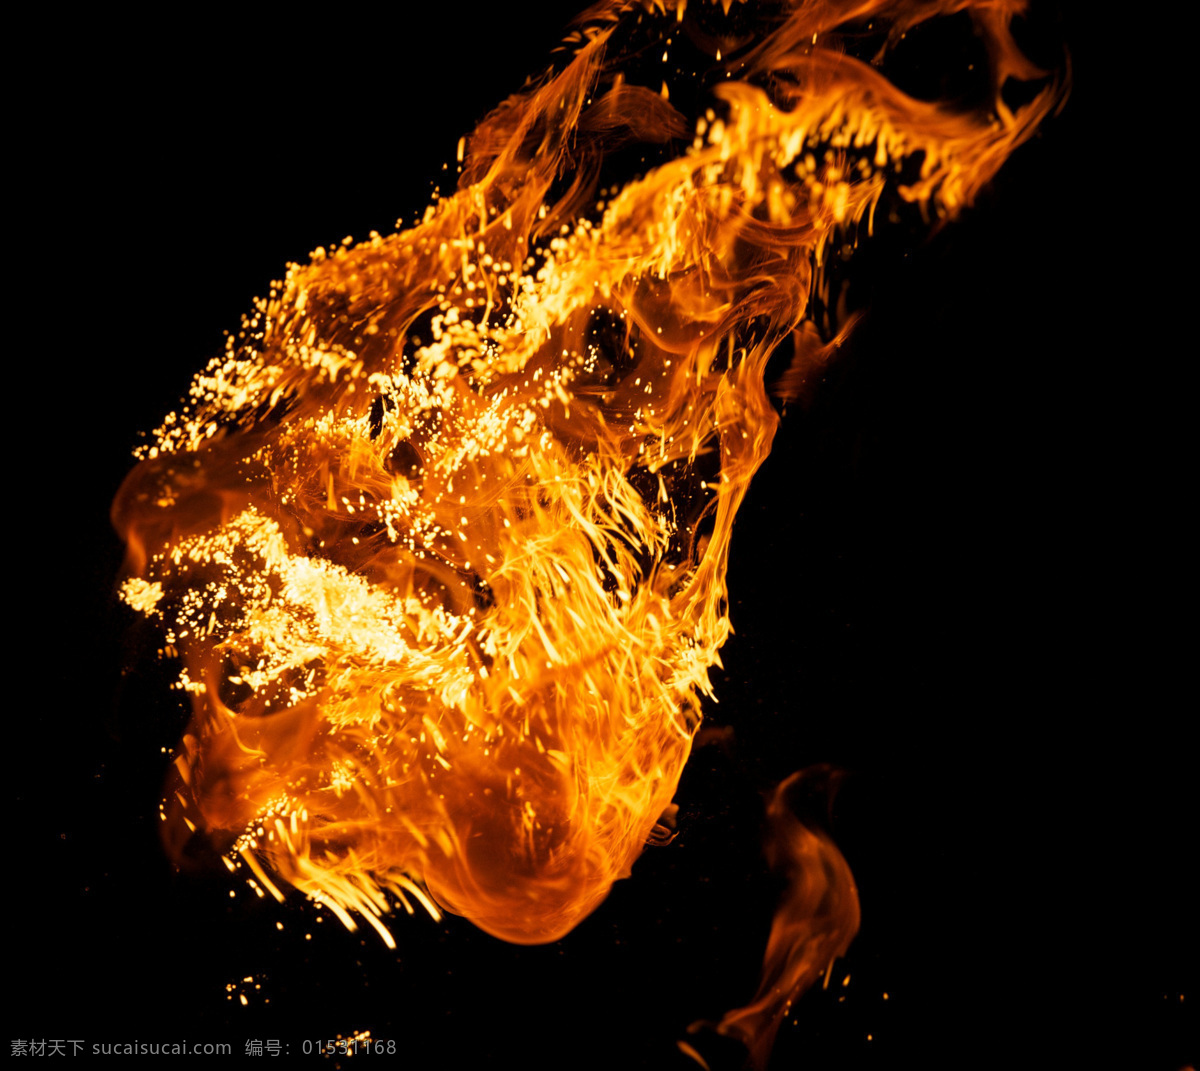 火焰 素材图片 火势 火苗 创意 火焰图片 生活百科